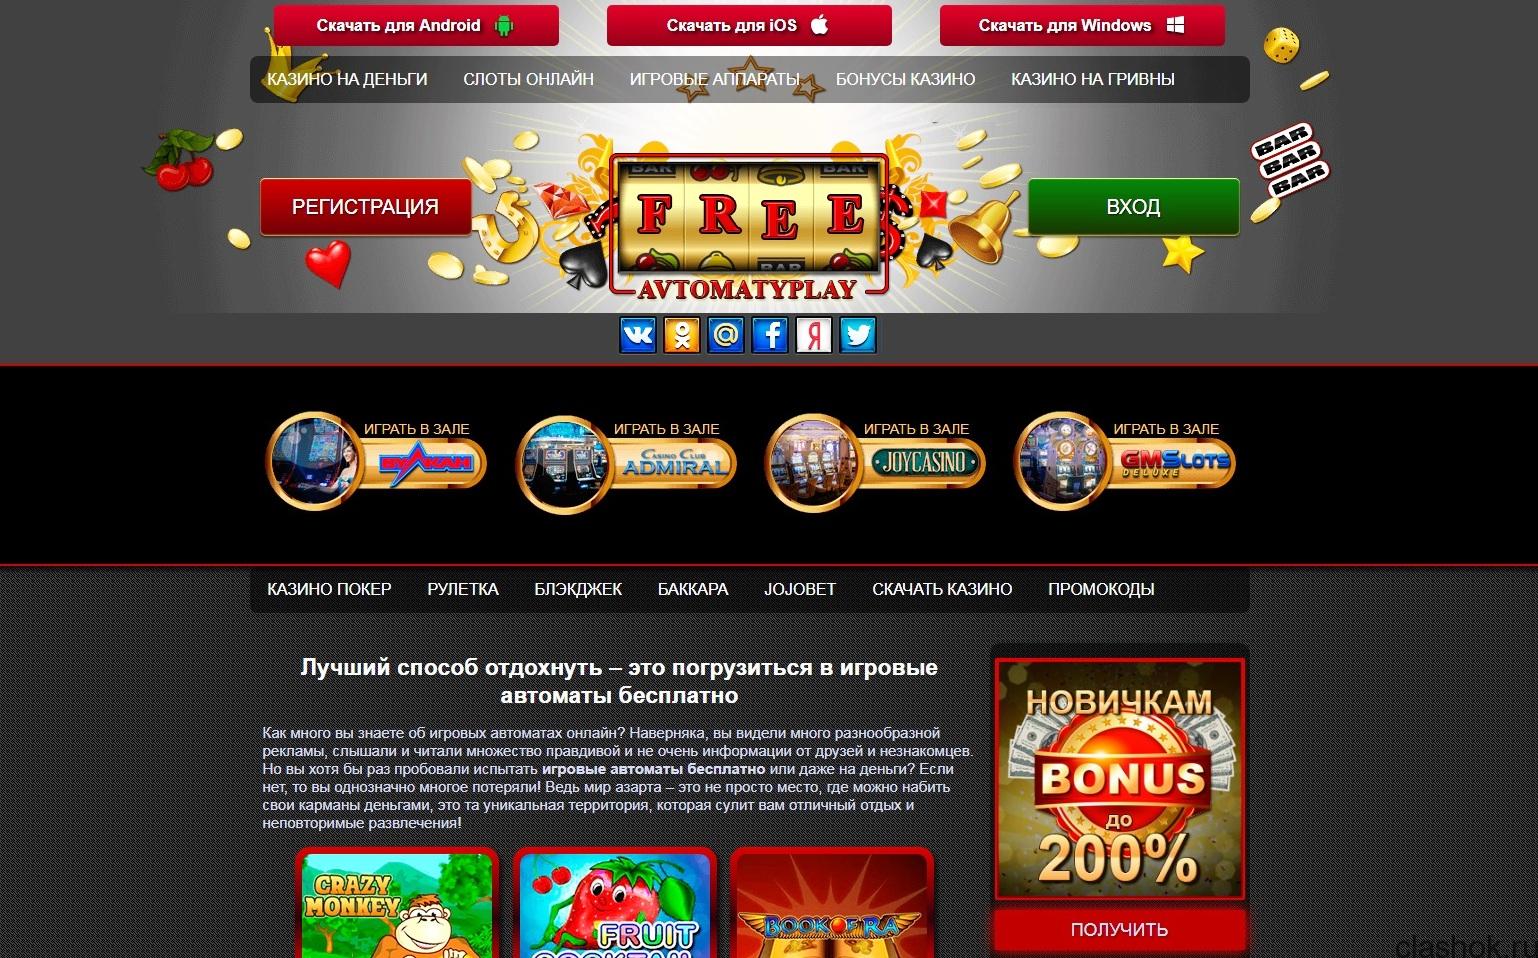 Скачать онлайн казино на реальные деньги для андроид скачать бесплатно пароли на фрироллы покердом incubus promo